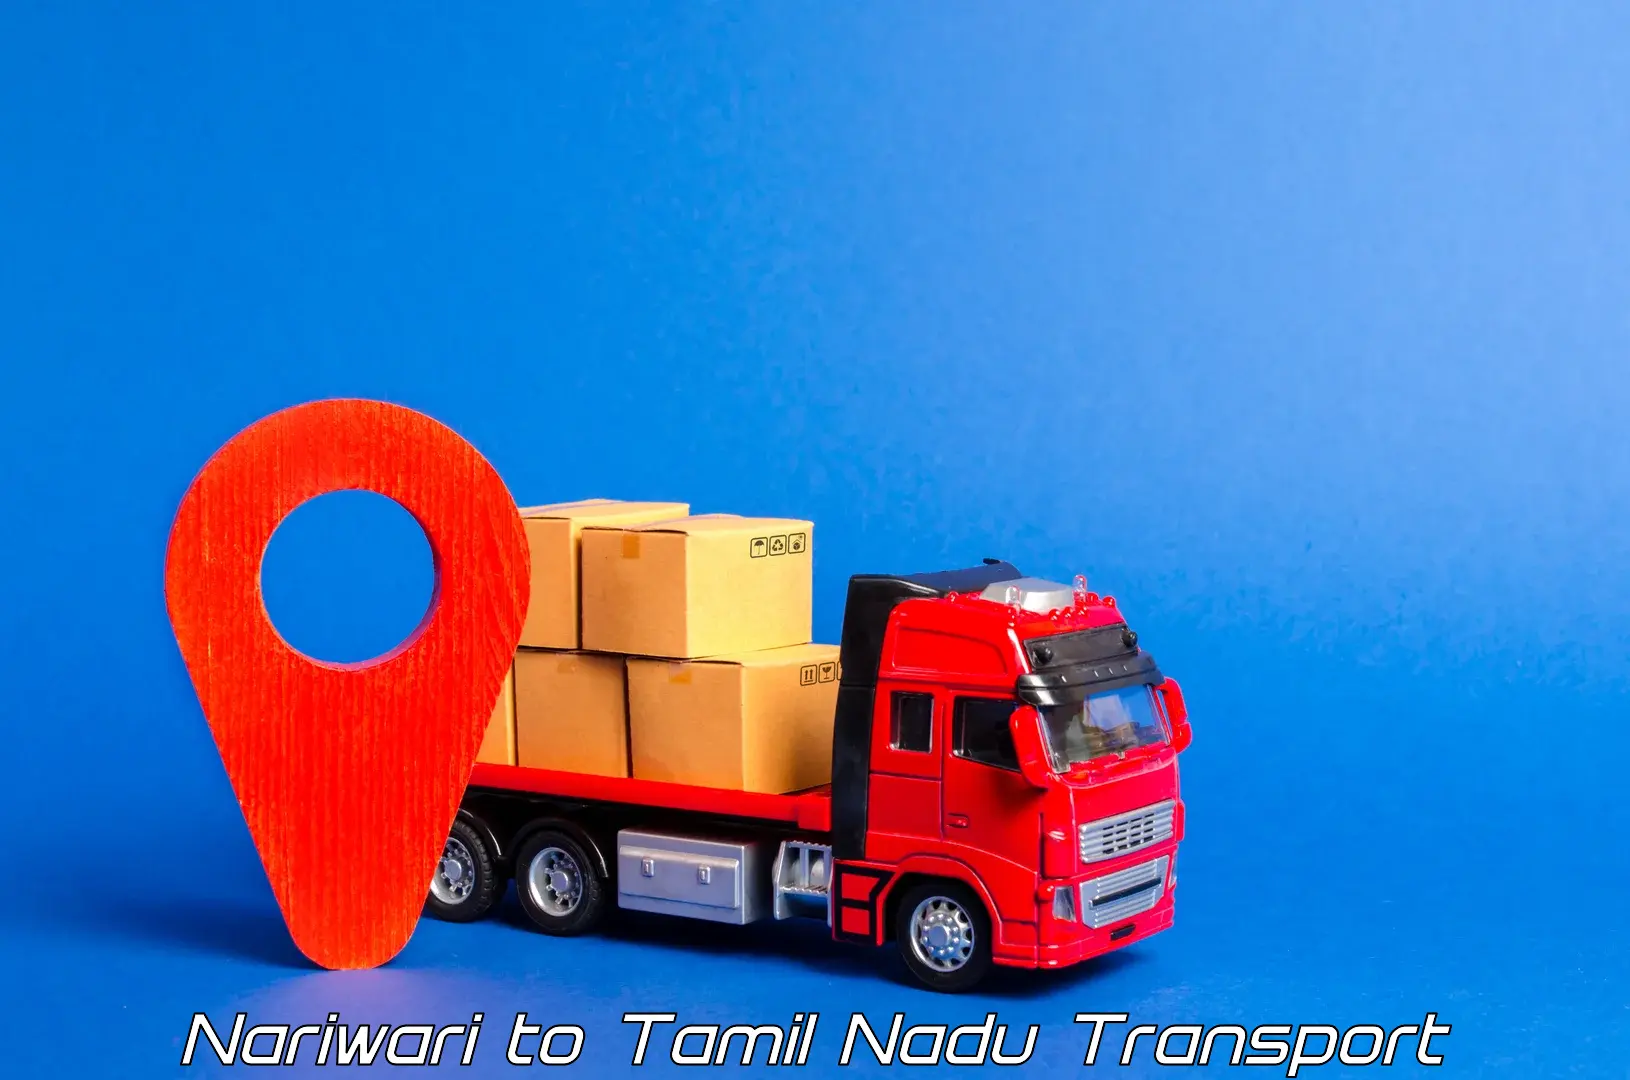 Lorry transport service Nariwari to Tamil Nadu